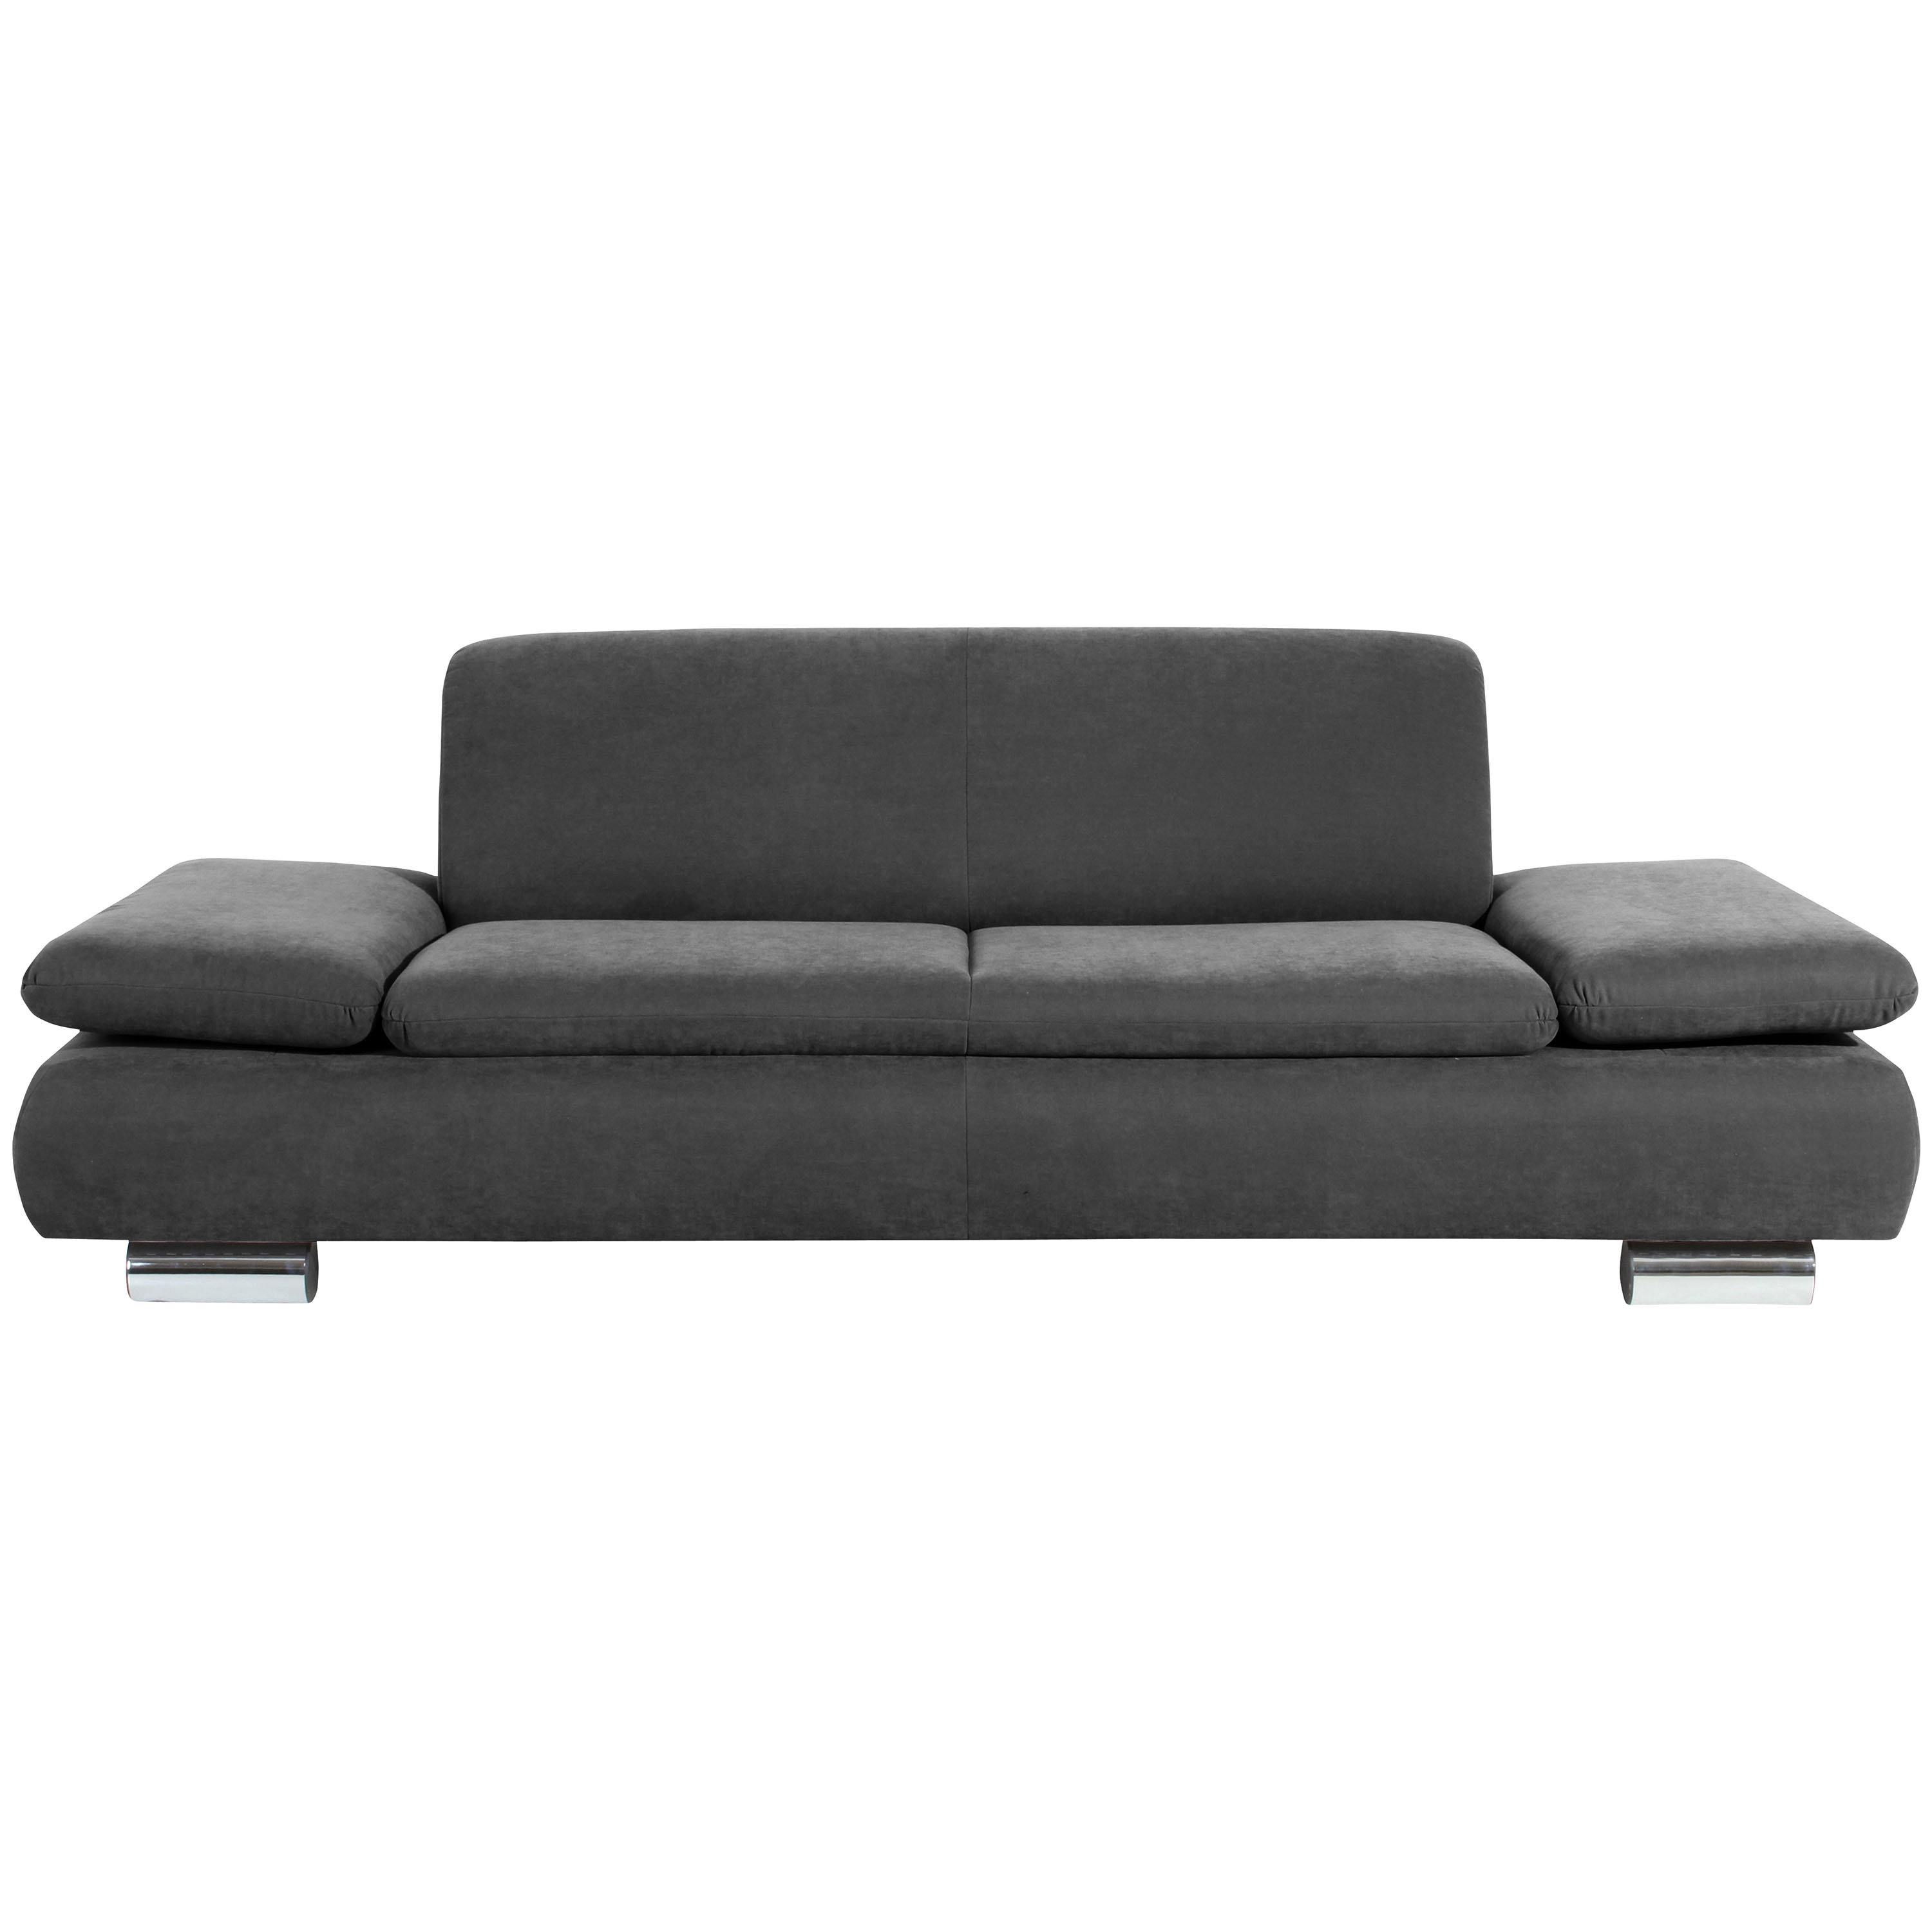 frontansicht von einem gemütlichen 2,5-sitzer sofa in anthrazit mit verchromten metallfüssen